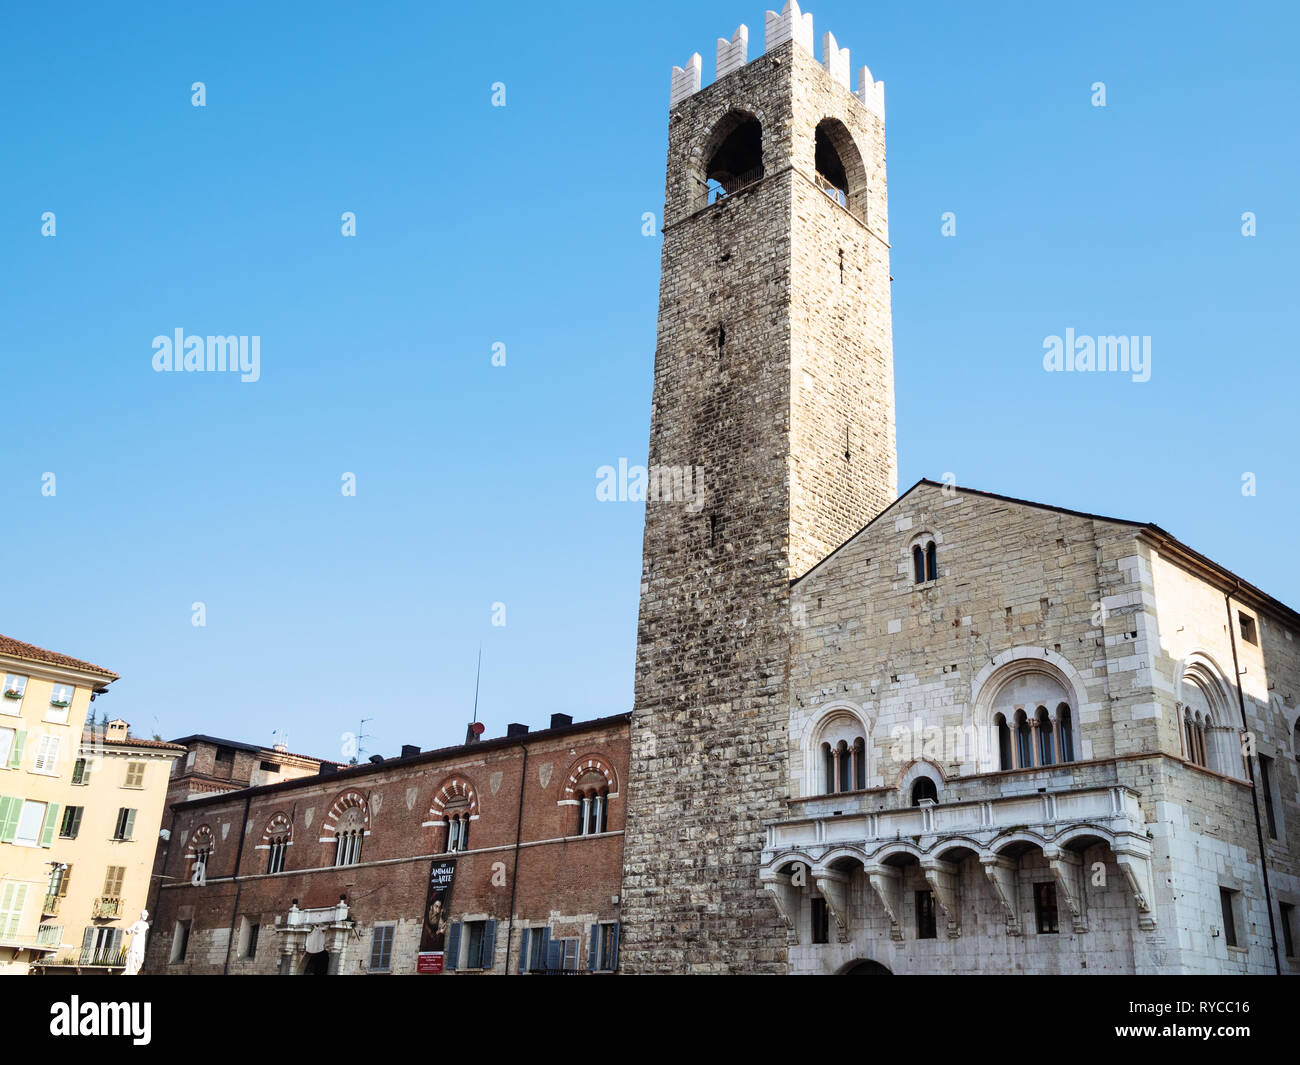 BRESCIA, ITALY - FEBRUARY 21, 2019: old town hall Broletto, tower Torre del Pegol, medieval house Loggia delle Grida on square Piazza Paolo VI (Piazza Stock Photo